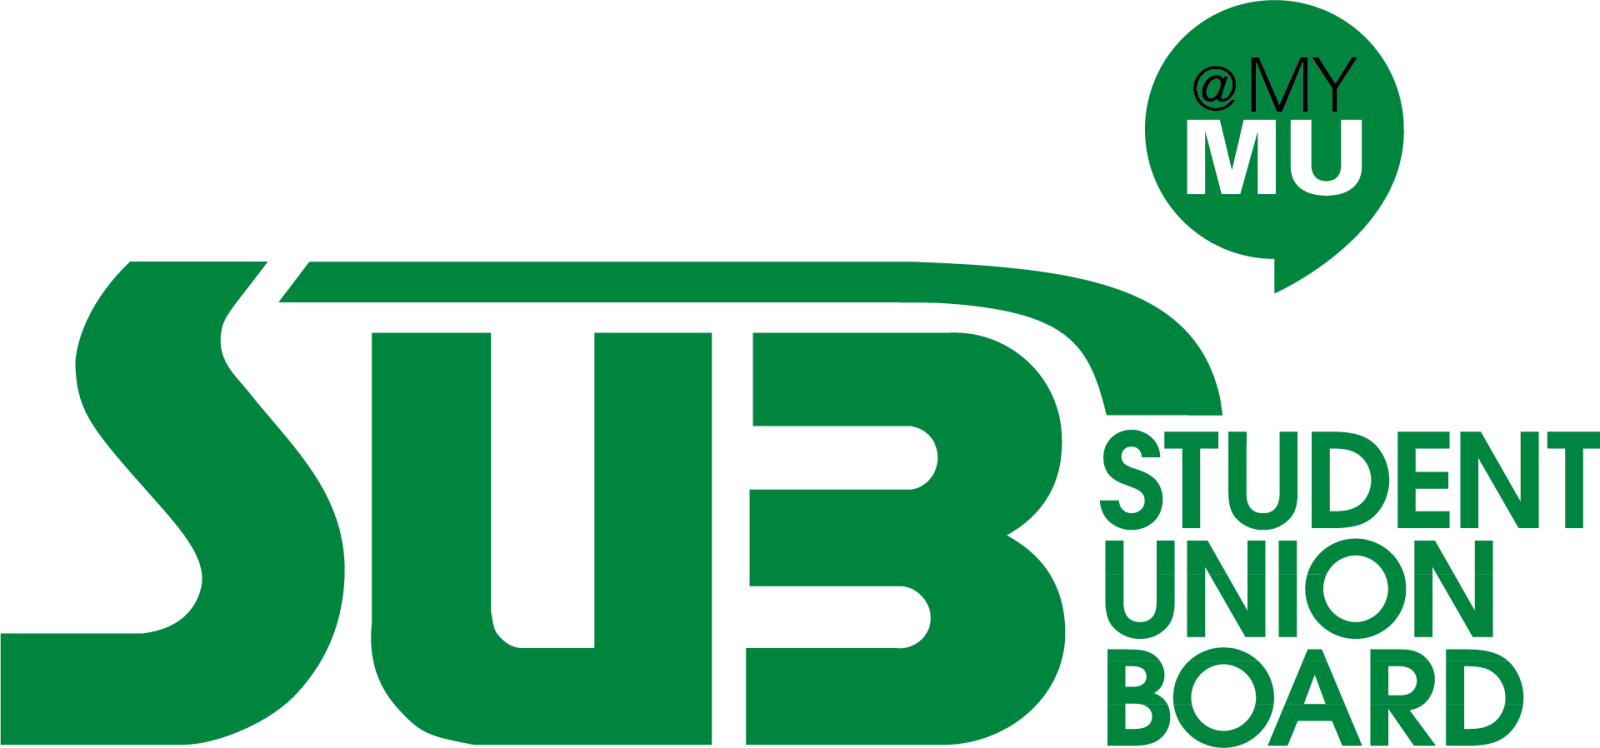 Student Union Board logo